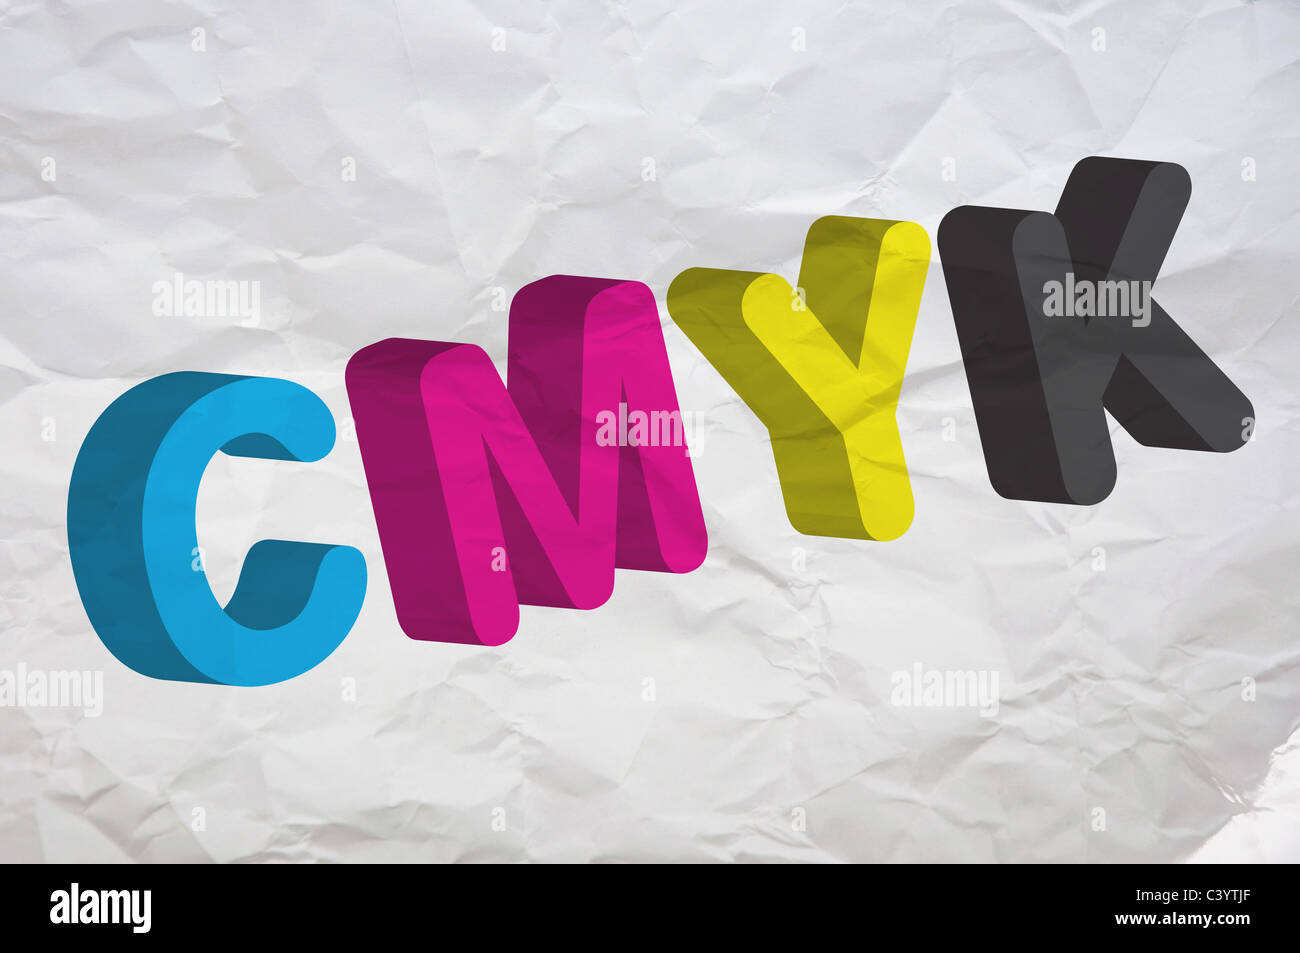 CMYK, cuatro letras que representan a cuatro colores en la industria de impresión. Imagen puede ser utilizado como una ilustración para un tema poligráfica. Foto de stock